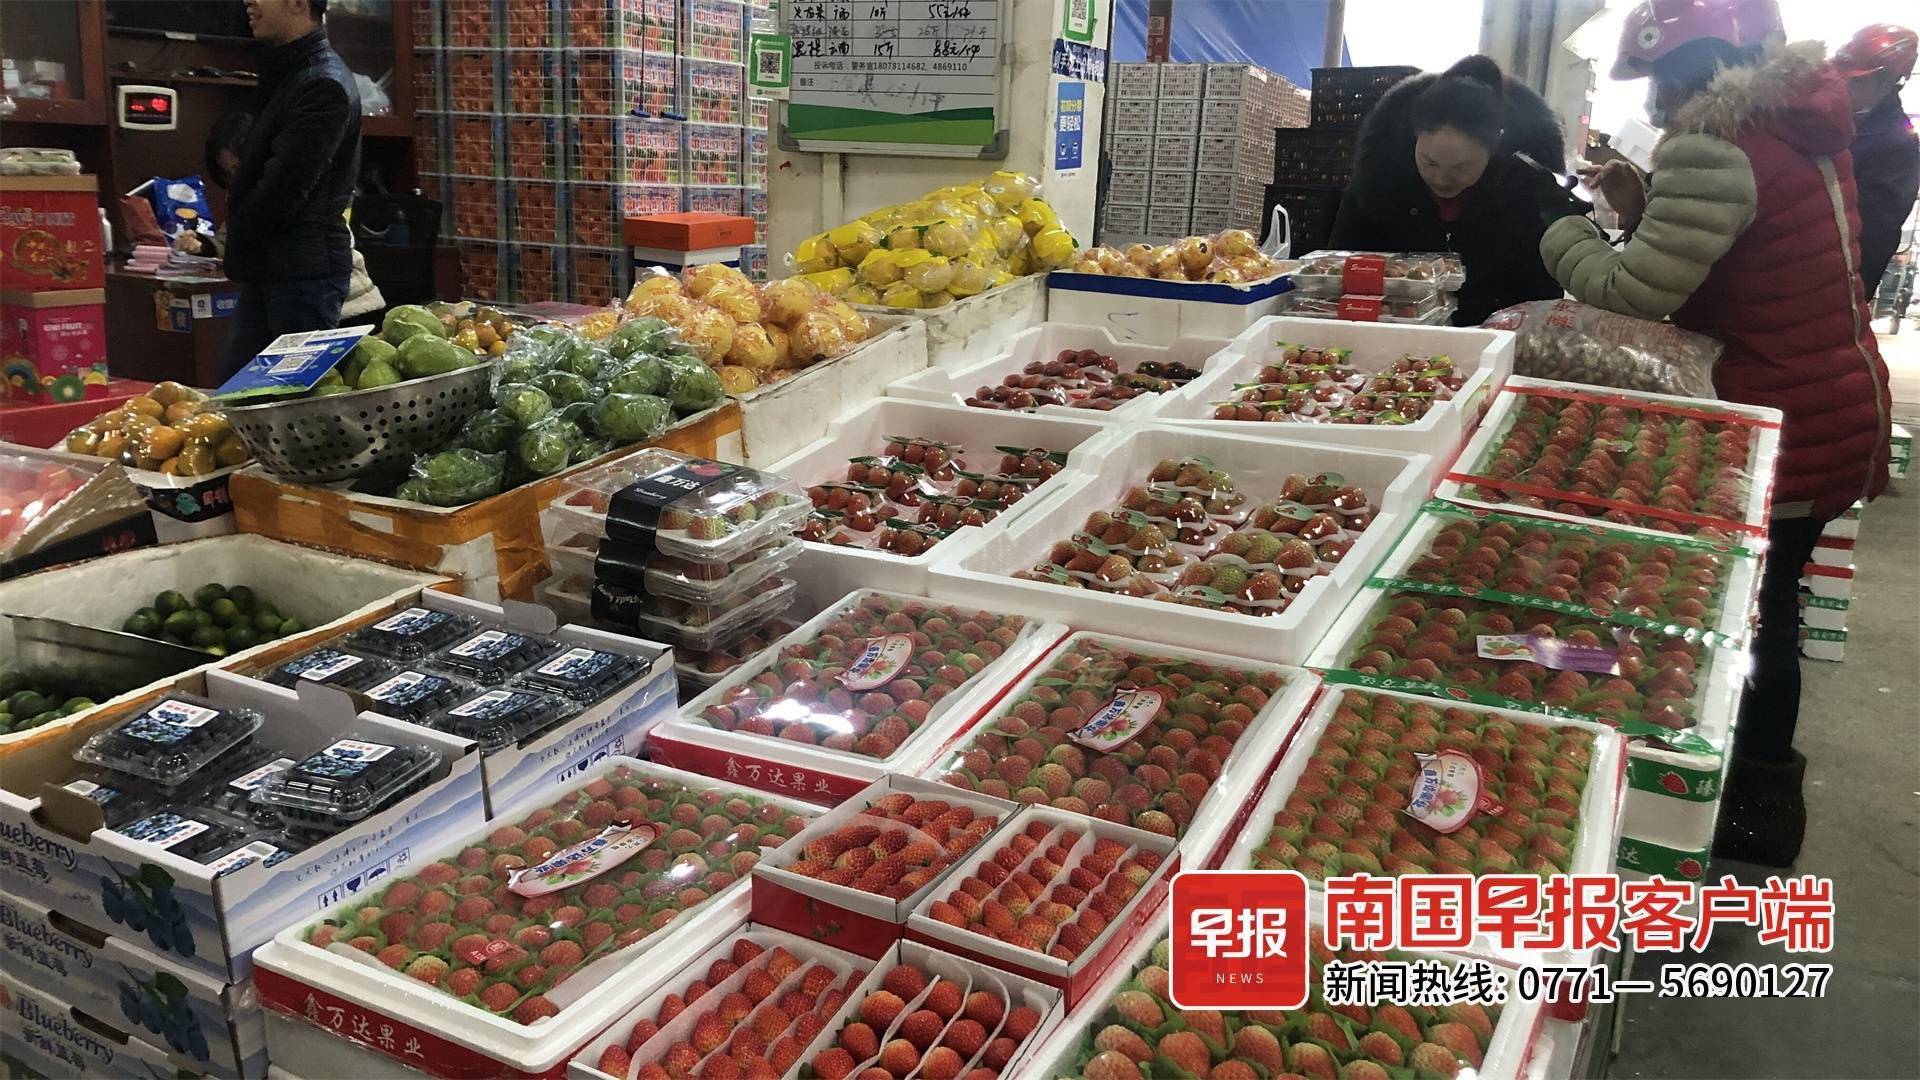 在南宁的海吉星批发市场,沃柑,樱桃,沙田柚,苹果等水果成为了大宗消费